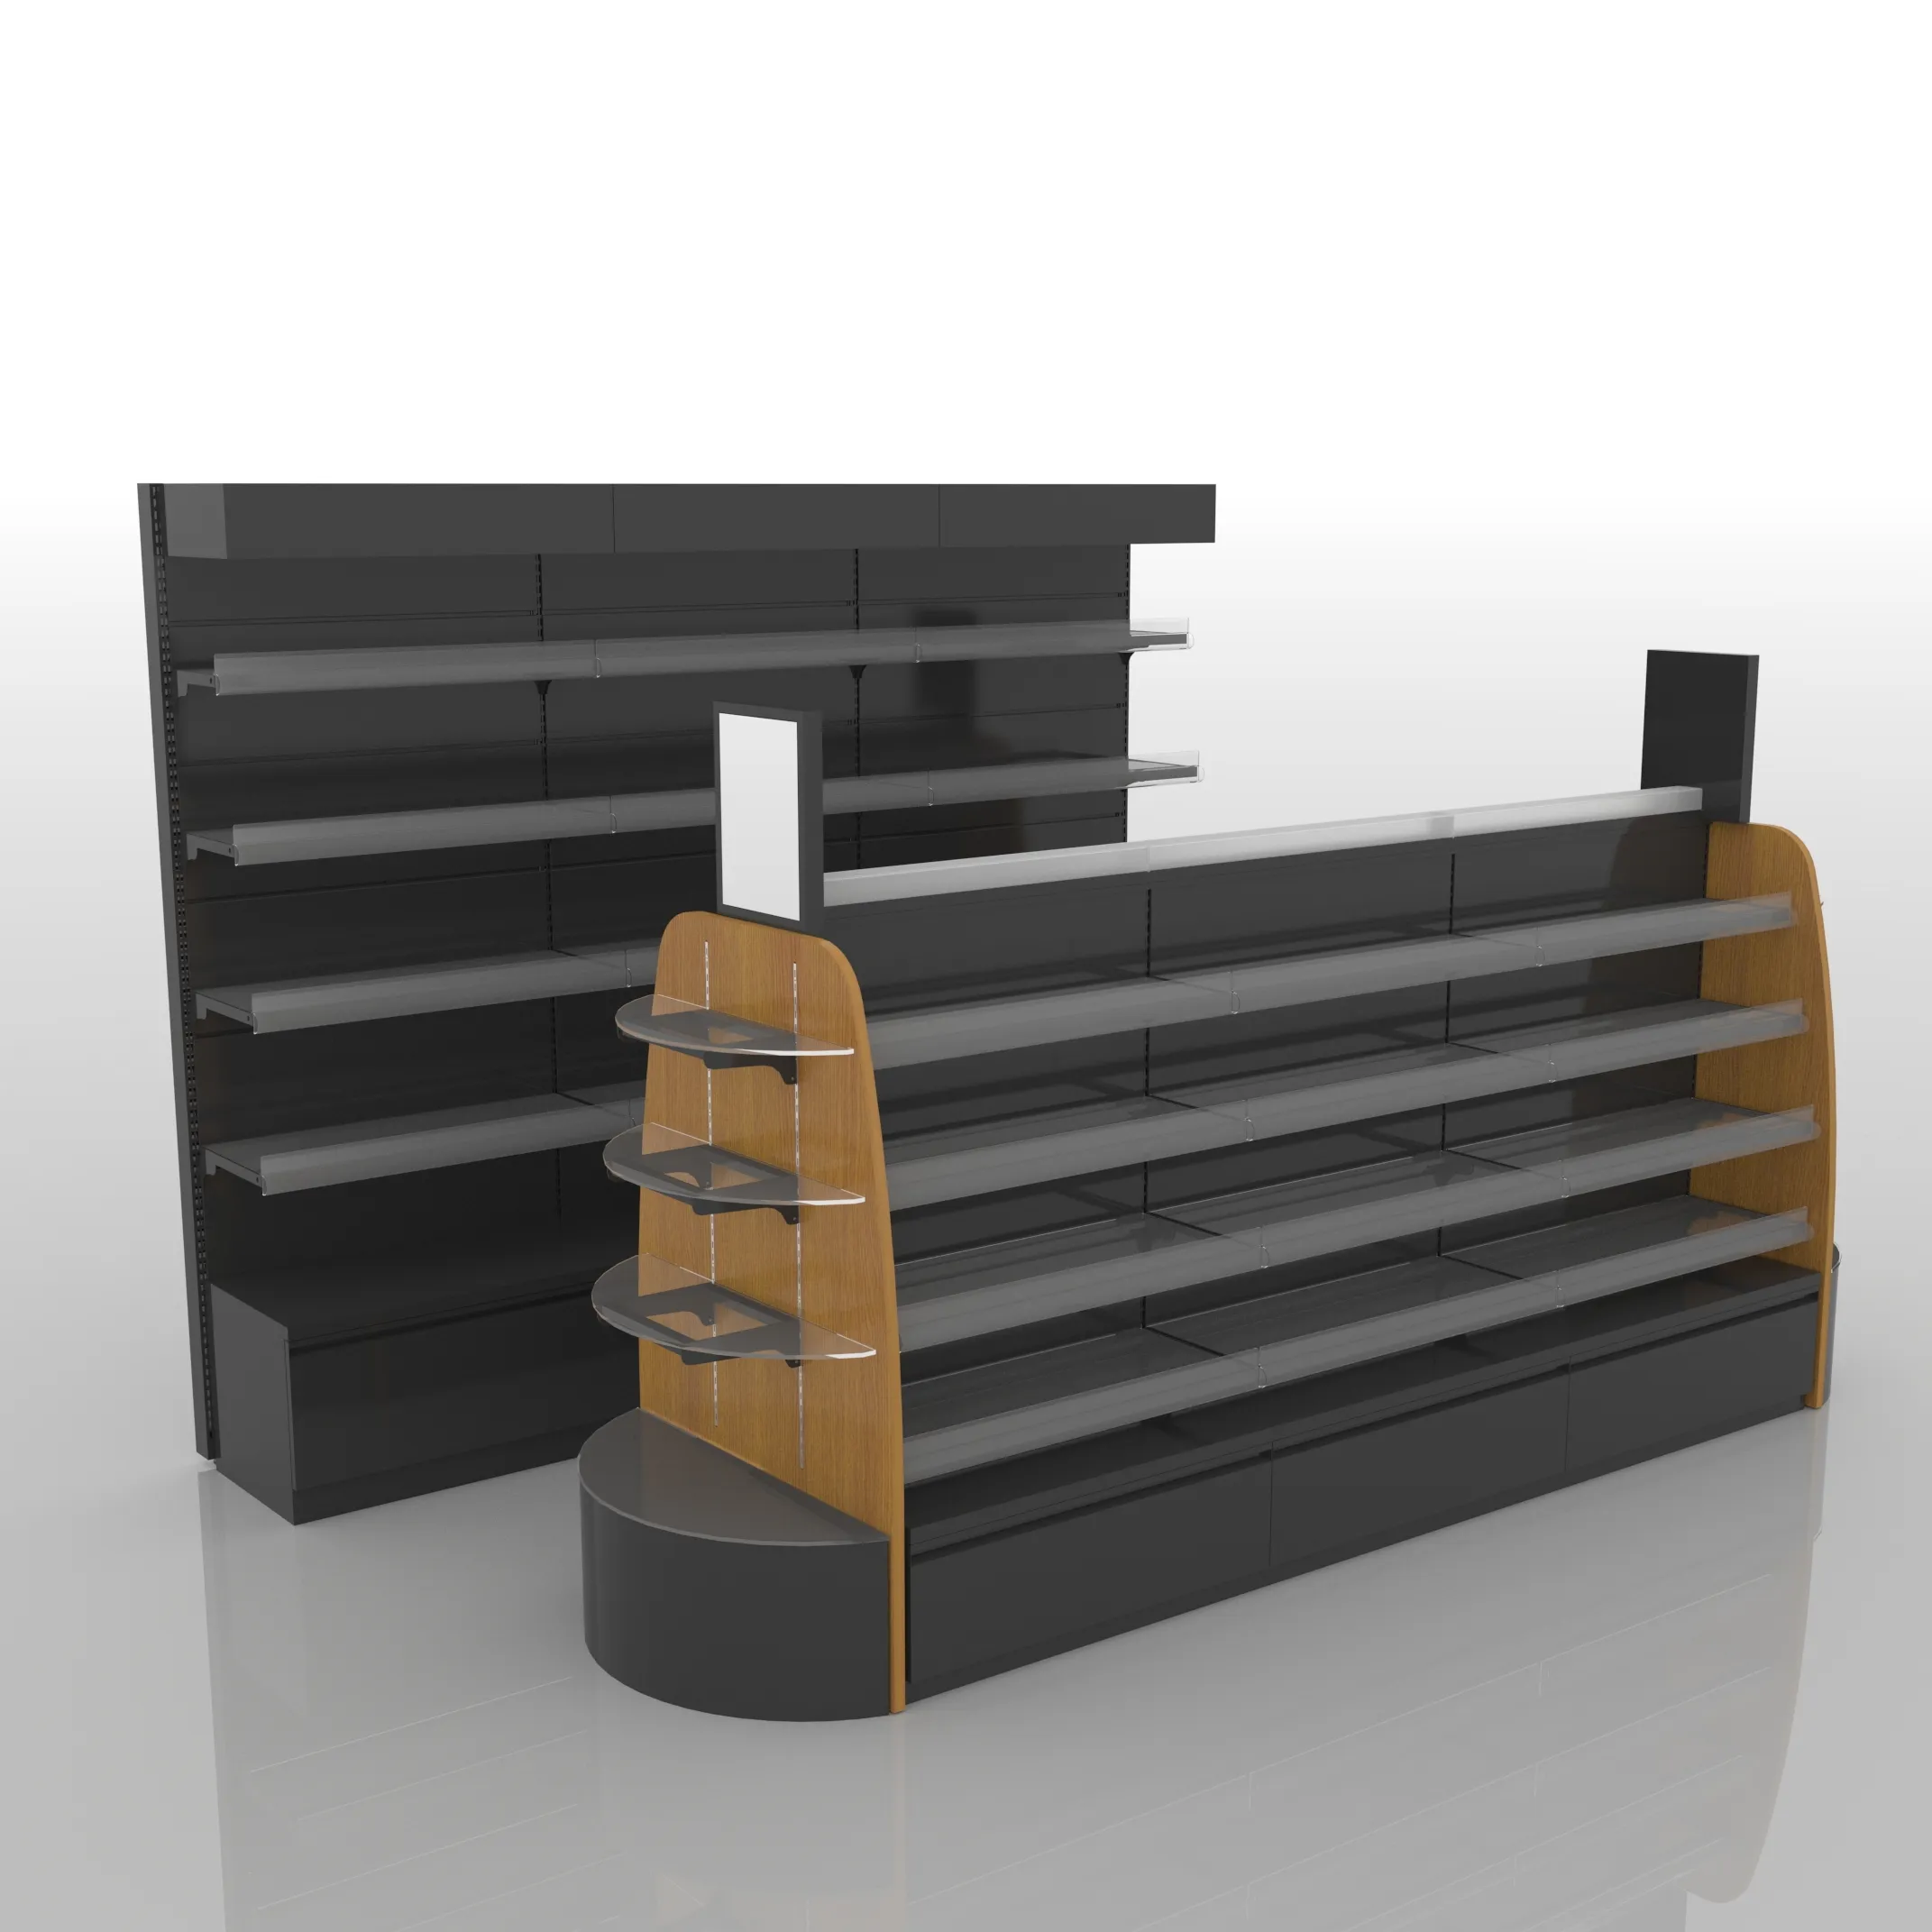 Xinde-estantes de exhibición de madera y acero de alta calidad, para tienda minorista, supermercado